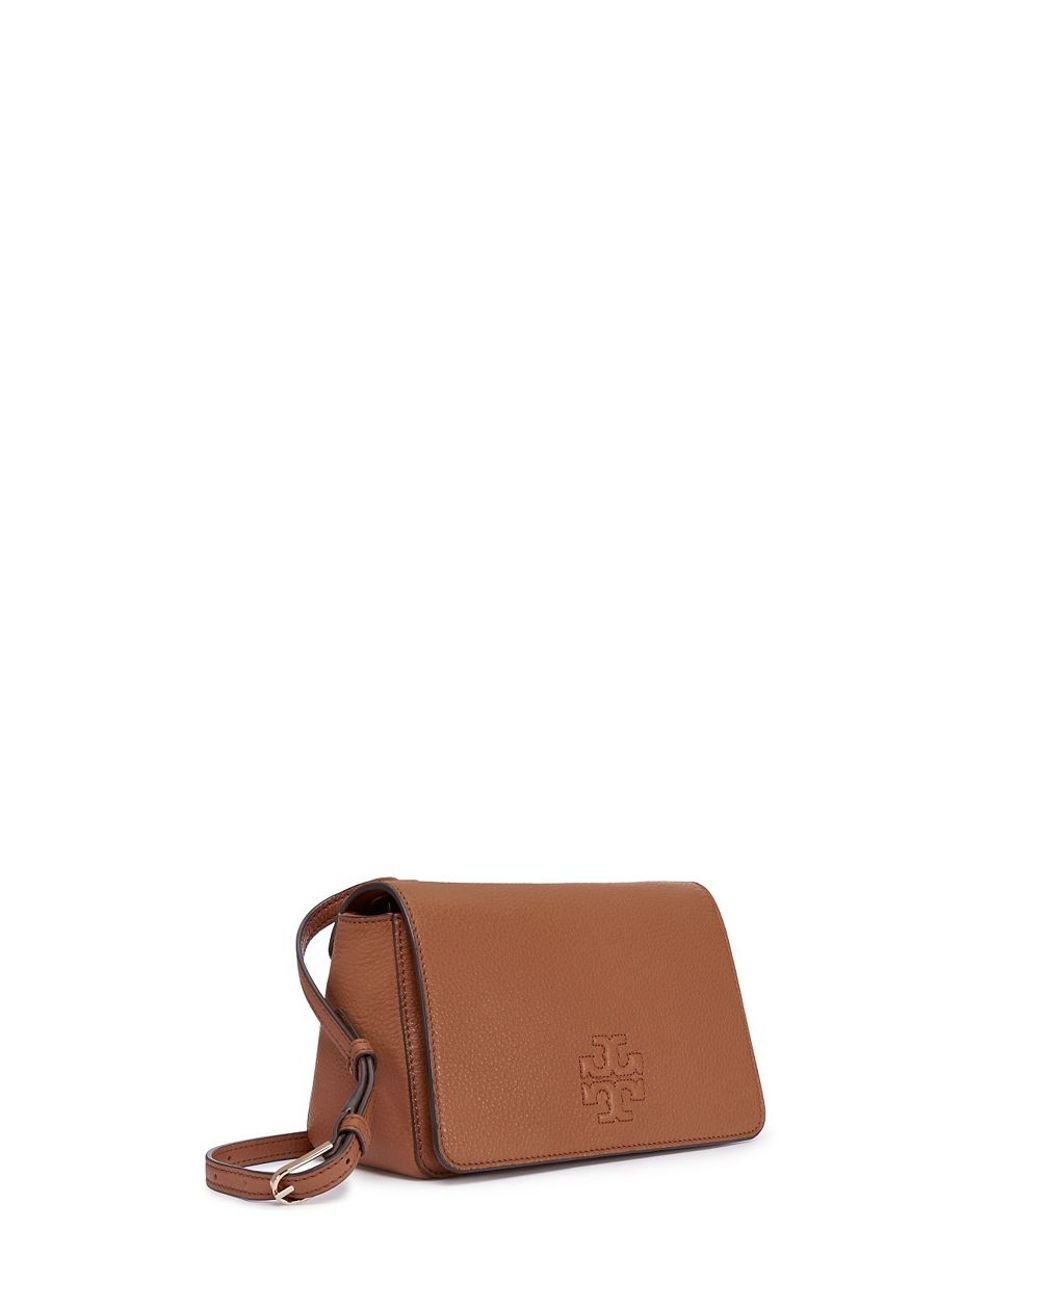 Tory Burch Thea Mini Bag in Brown | Lyst